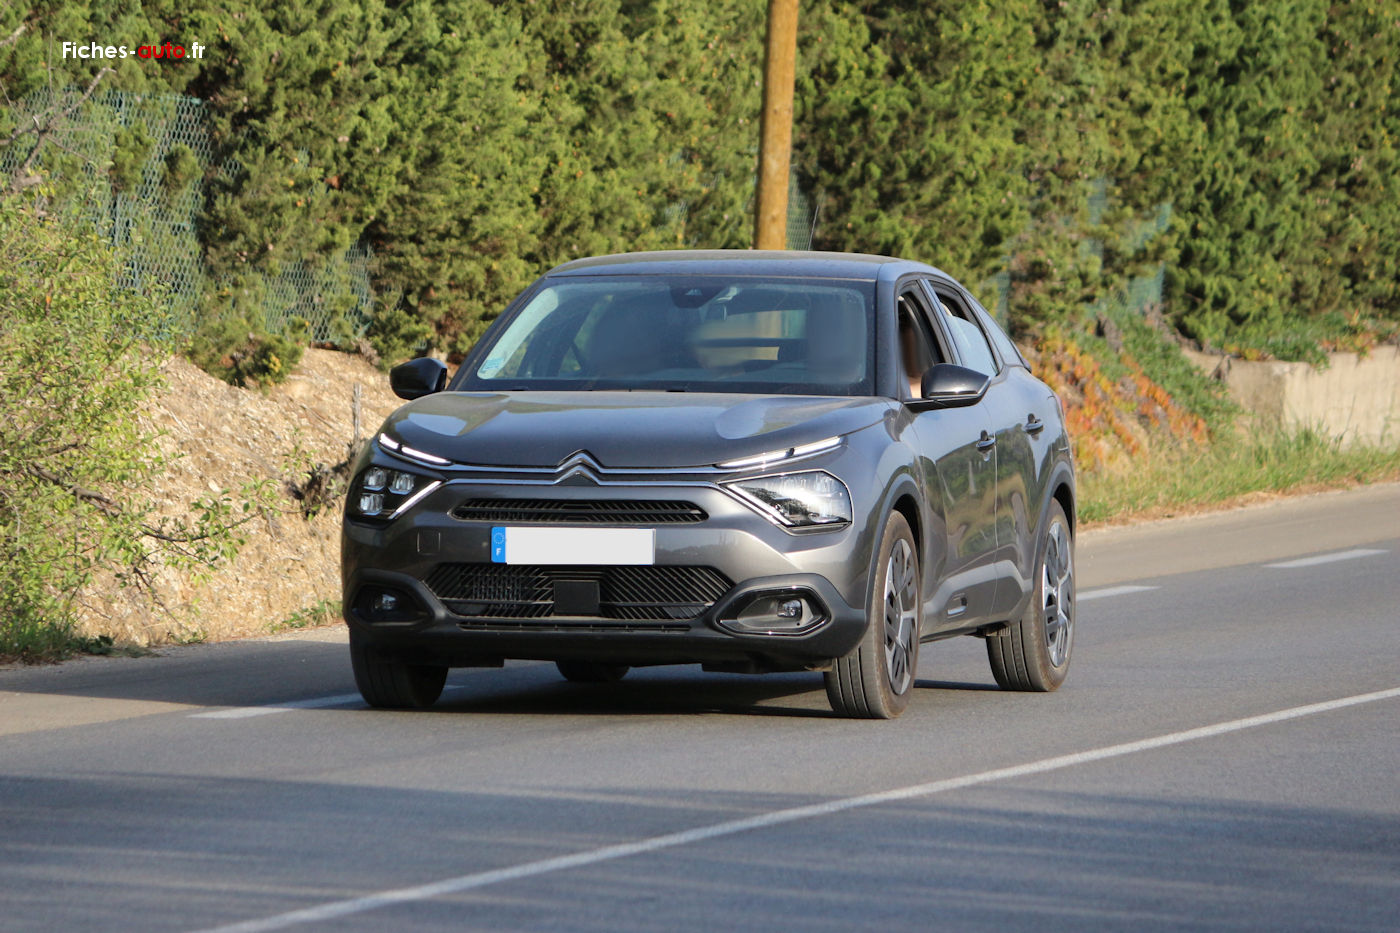 Citroën C4 III : qualités, défauts et bilan fiabilité – Essais Autos